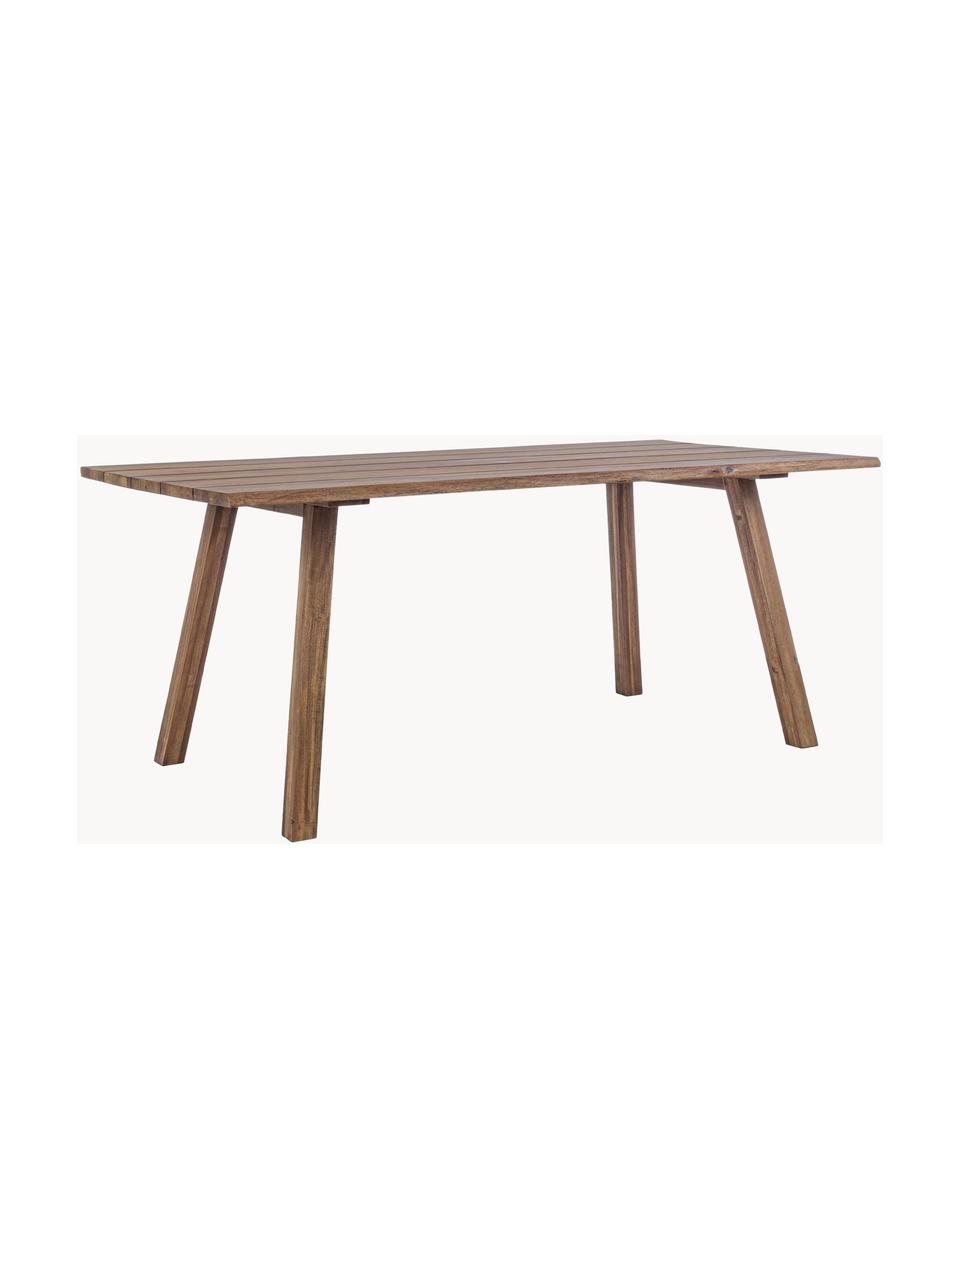 Záhradný stôl Glasgow, 180 x 90 cm, Akáciové drevo

Tento produkt je vyrobený z trvalo udržateľného dreva s certifikátom FSC®., Akáciové drevo, Š 180 x H 90 cm